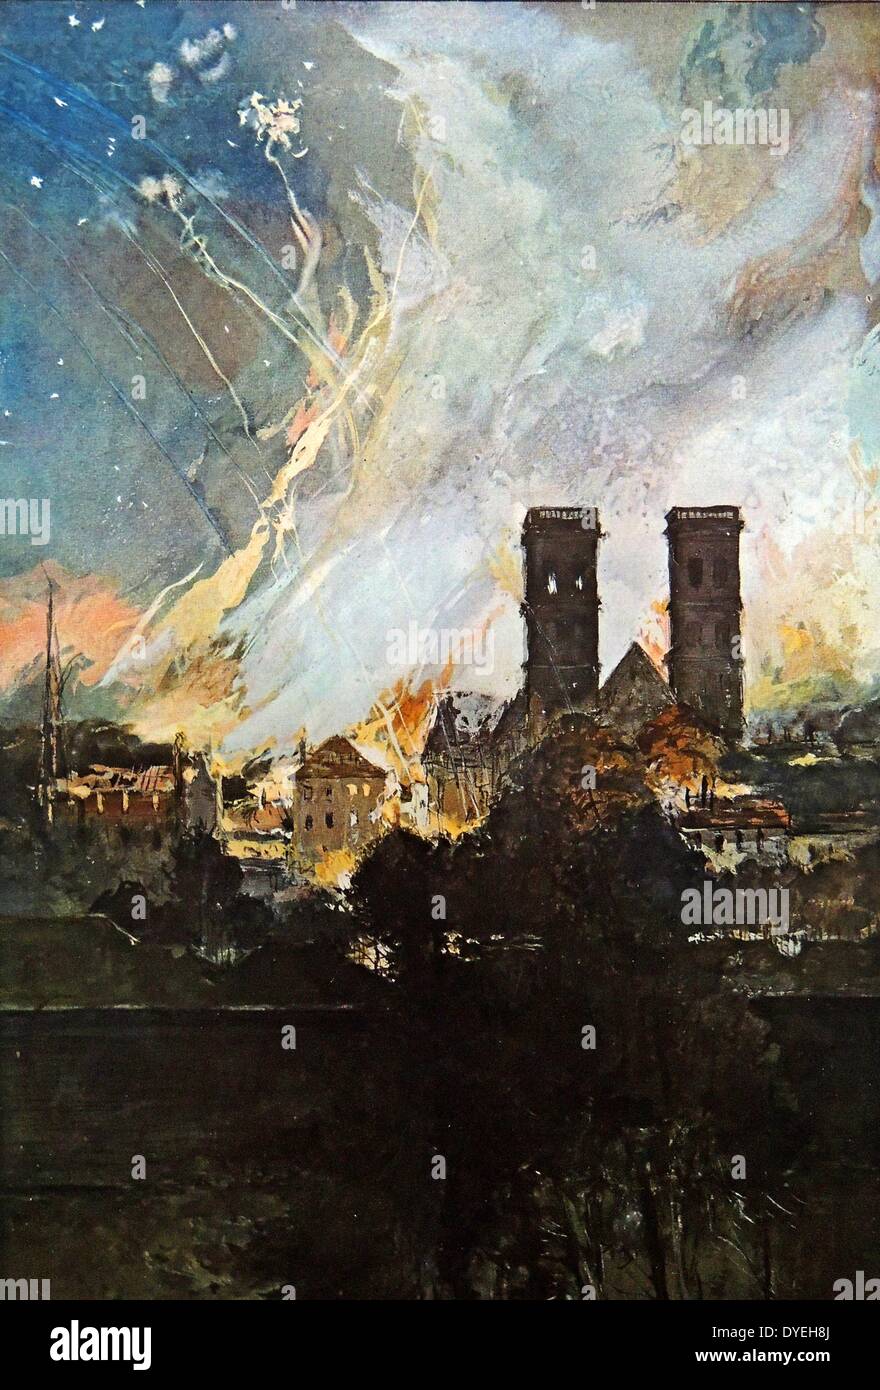 Weltkrieg 1 - Bombardierung des Dorfes und Fort von Douaumont 1916. Künstler Francois Flameng. Stockfoto